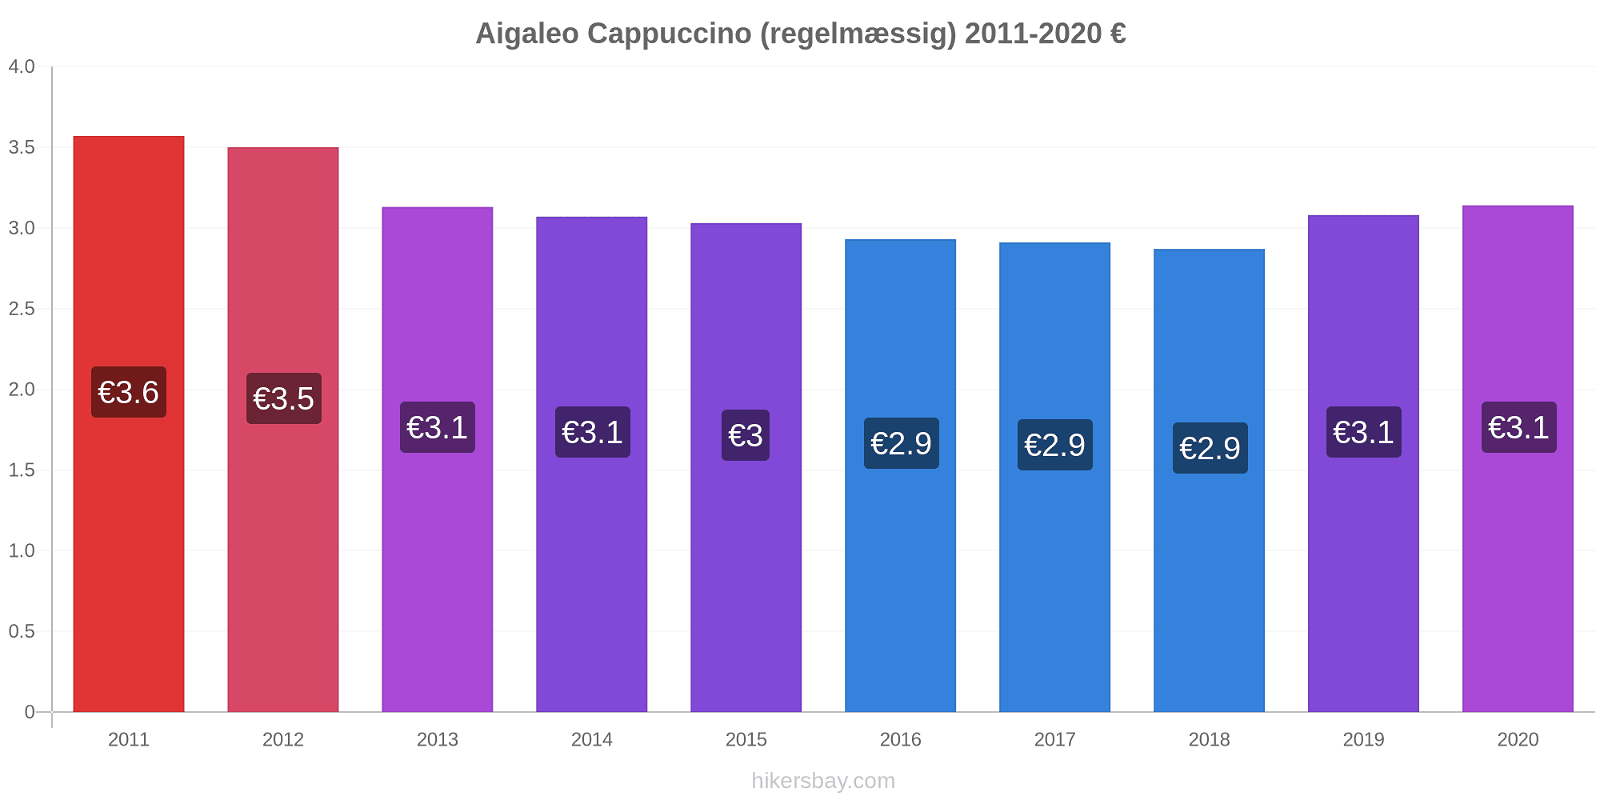 Aigaleo prisændringer Cappuccino (regelmæssig) hikersbay.com